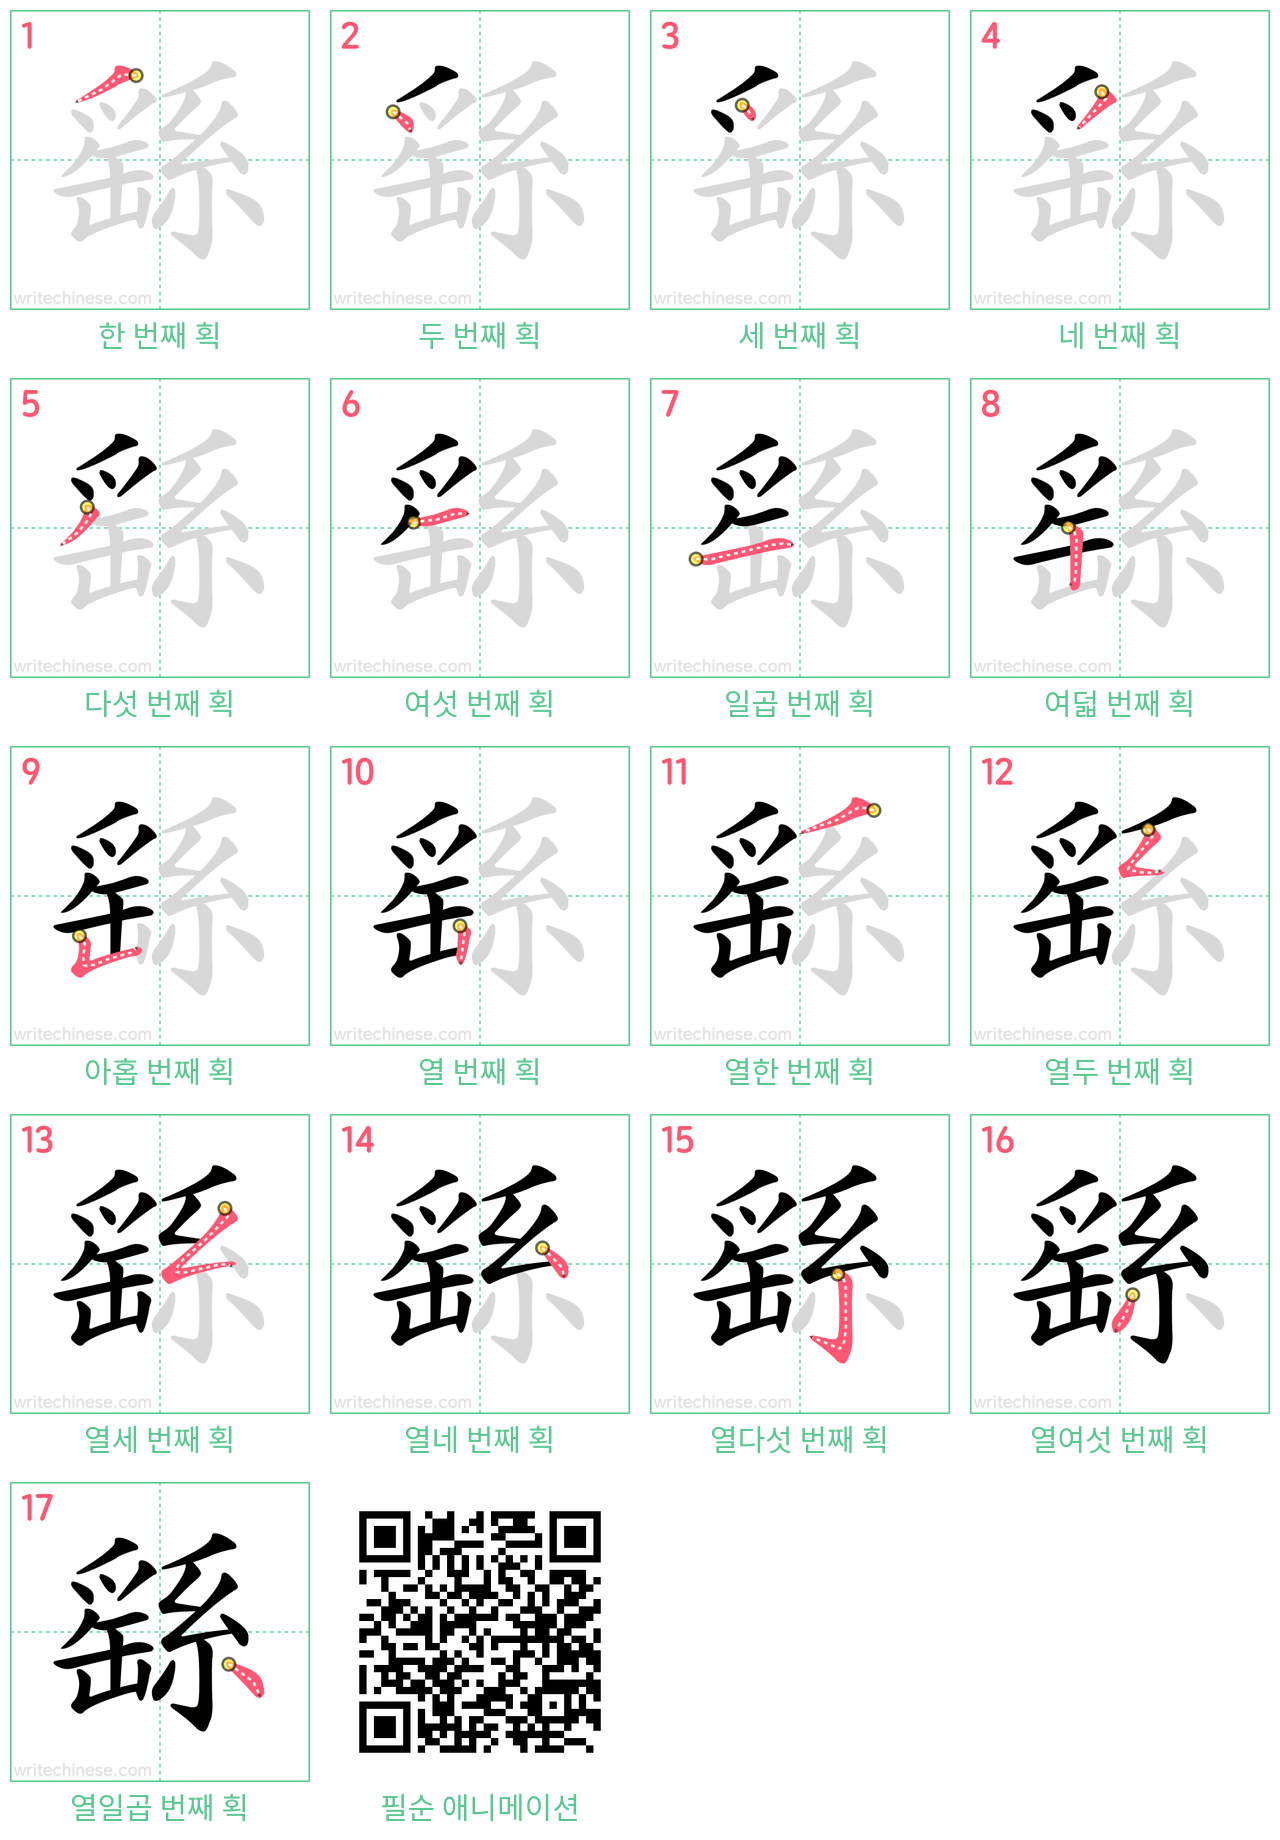 繇 step-by-step stroke order diagrams